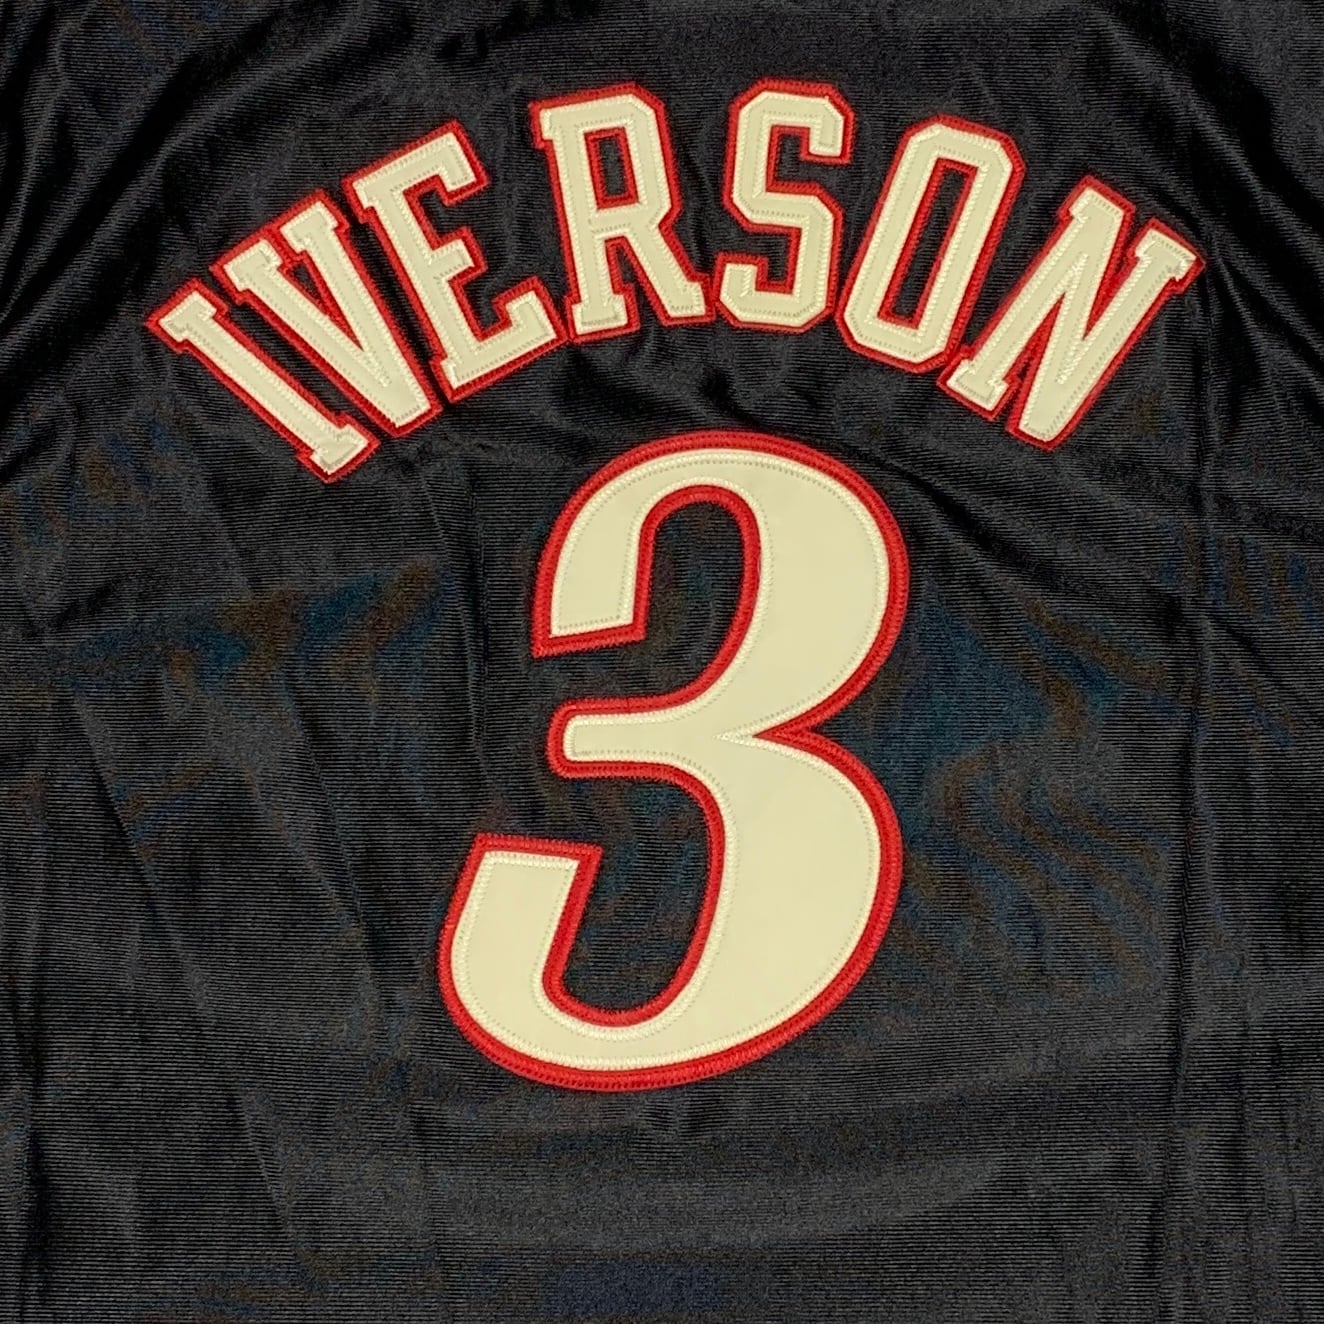 チャンピオン NBA76ersアレン・アイバーソン オーセンティックユニフォーム